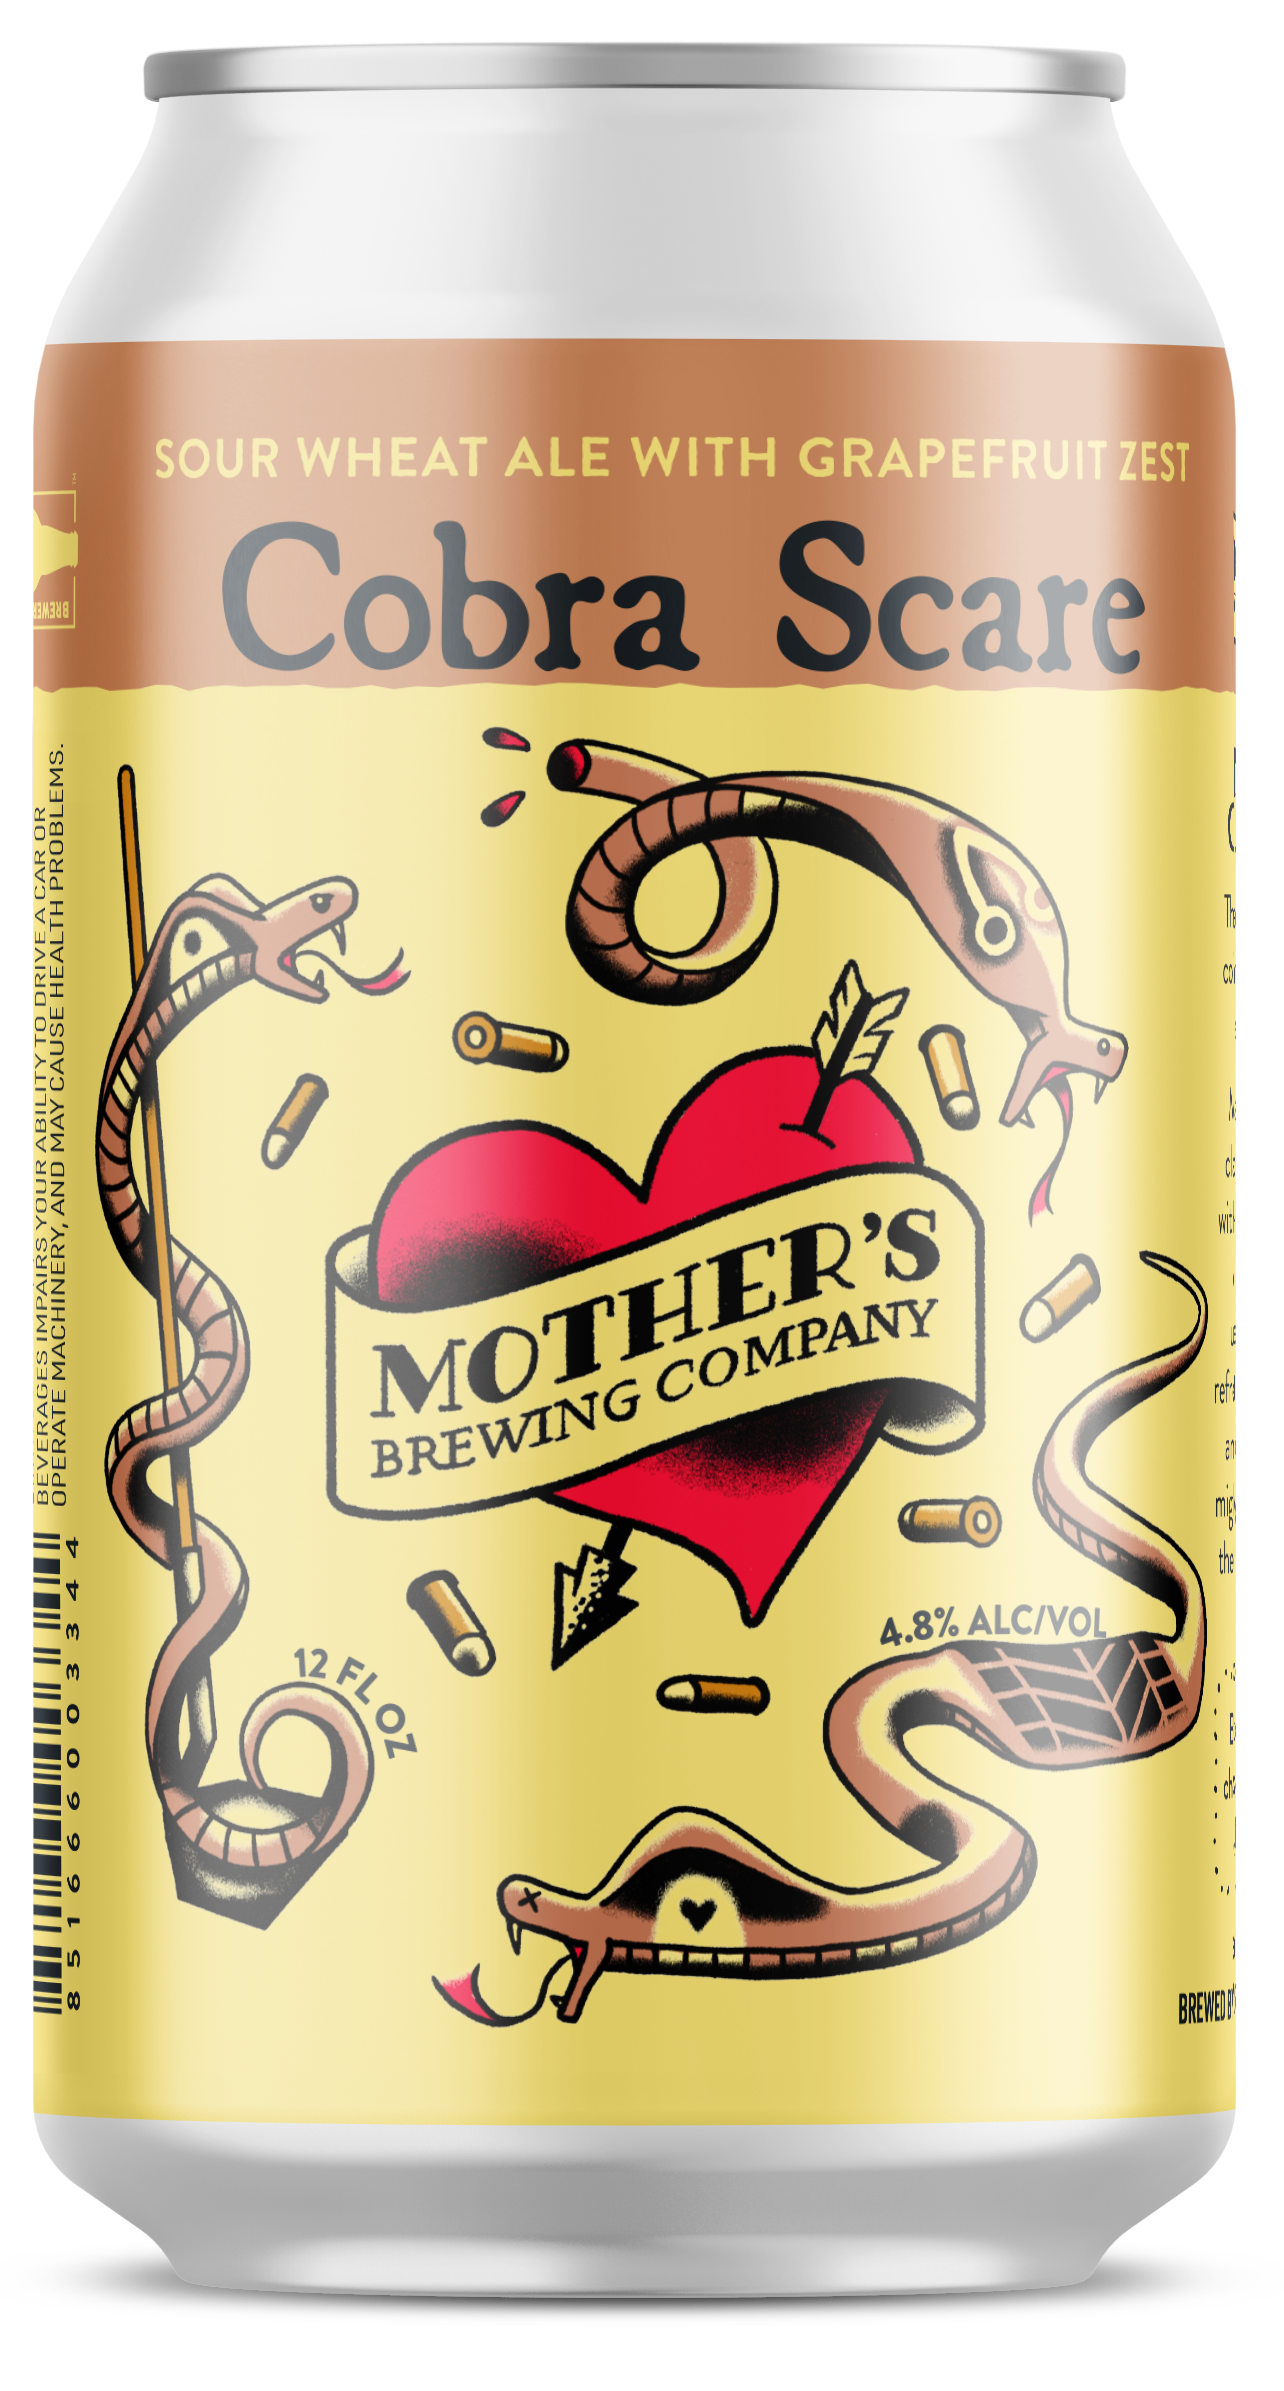 Cobra Scare